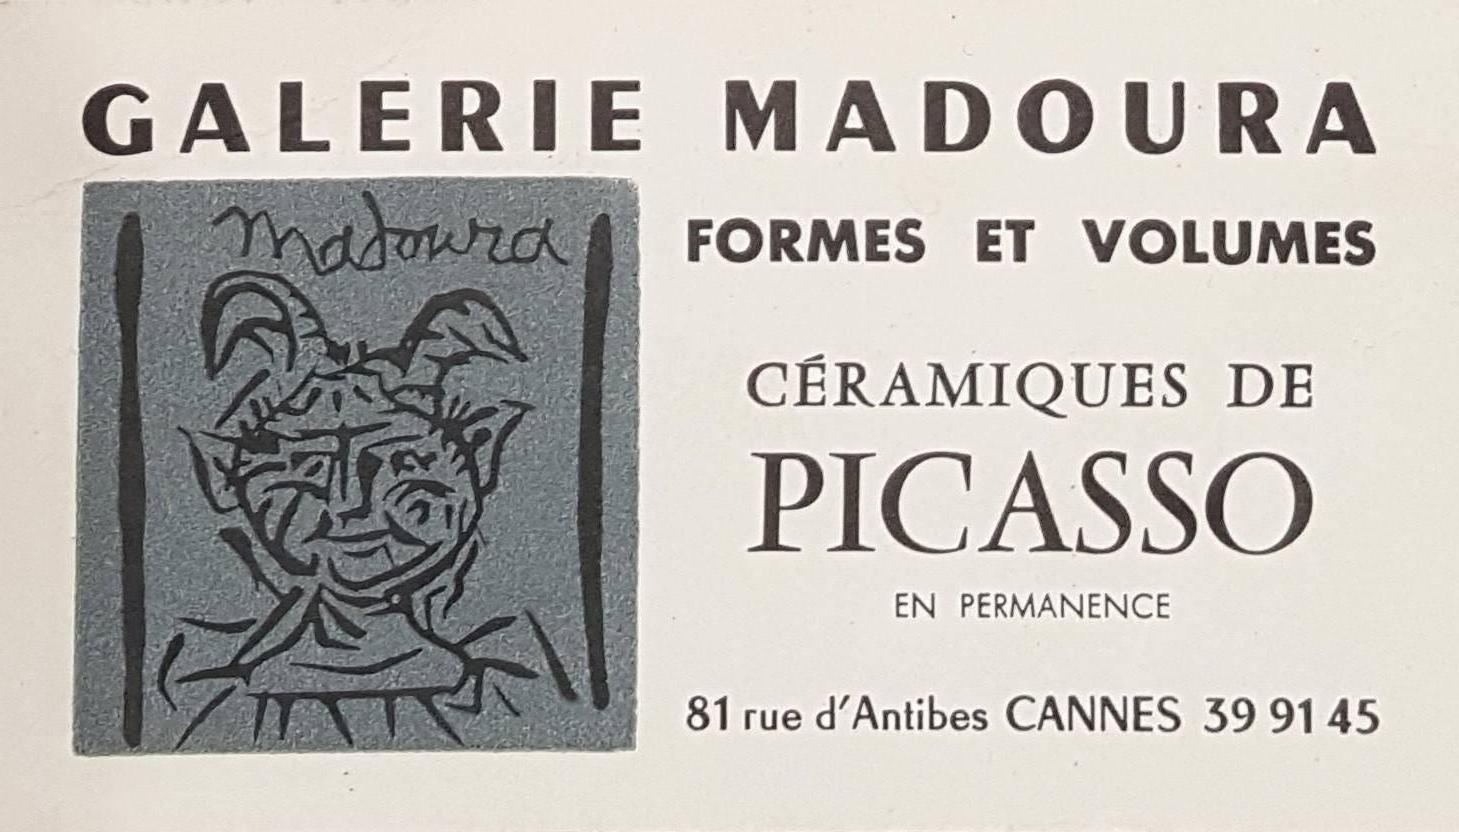 Pablo Picasso Figurative Print - Faun Head - Original linocut (invitation card for exhibition in Madoura Gallery)